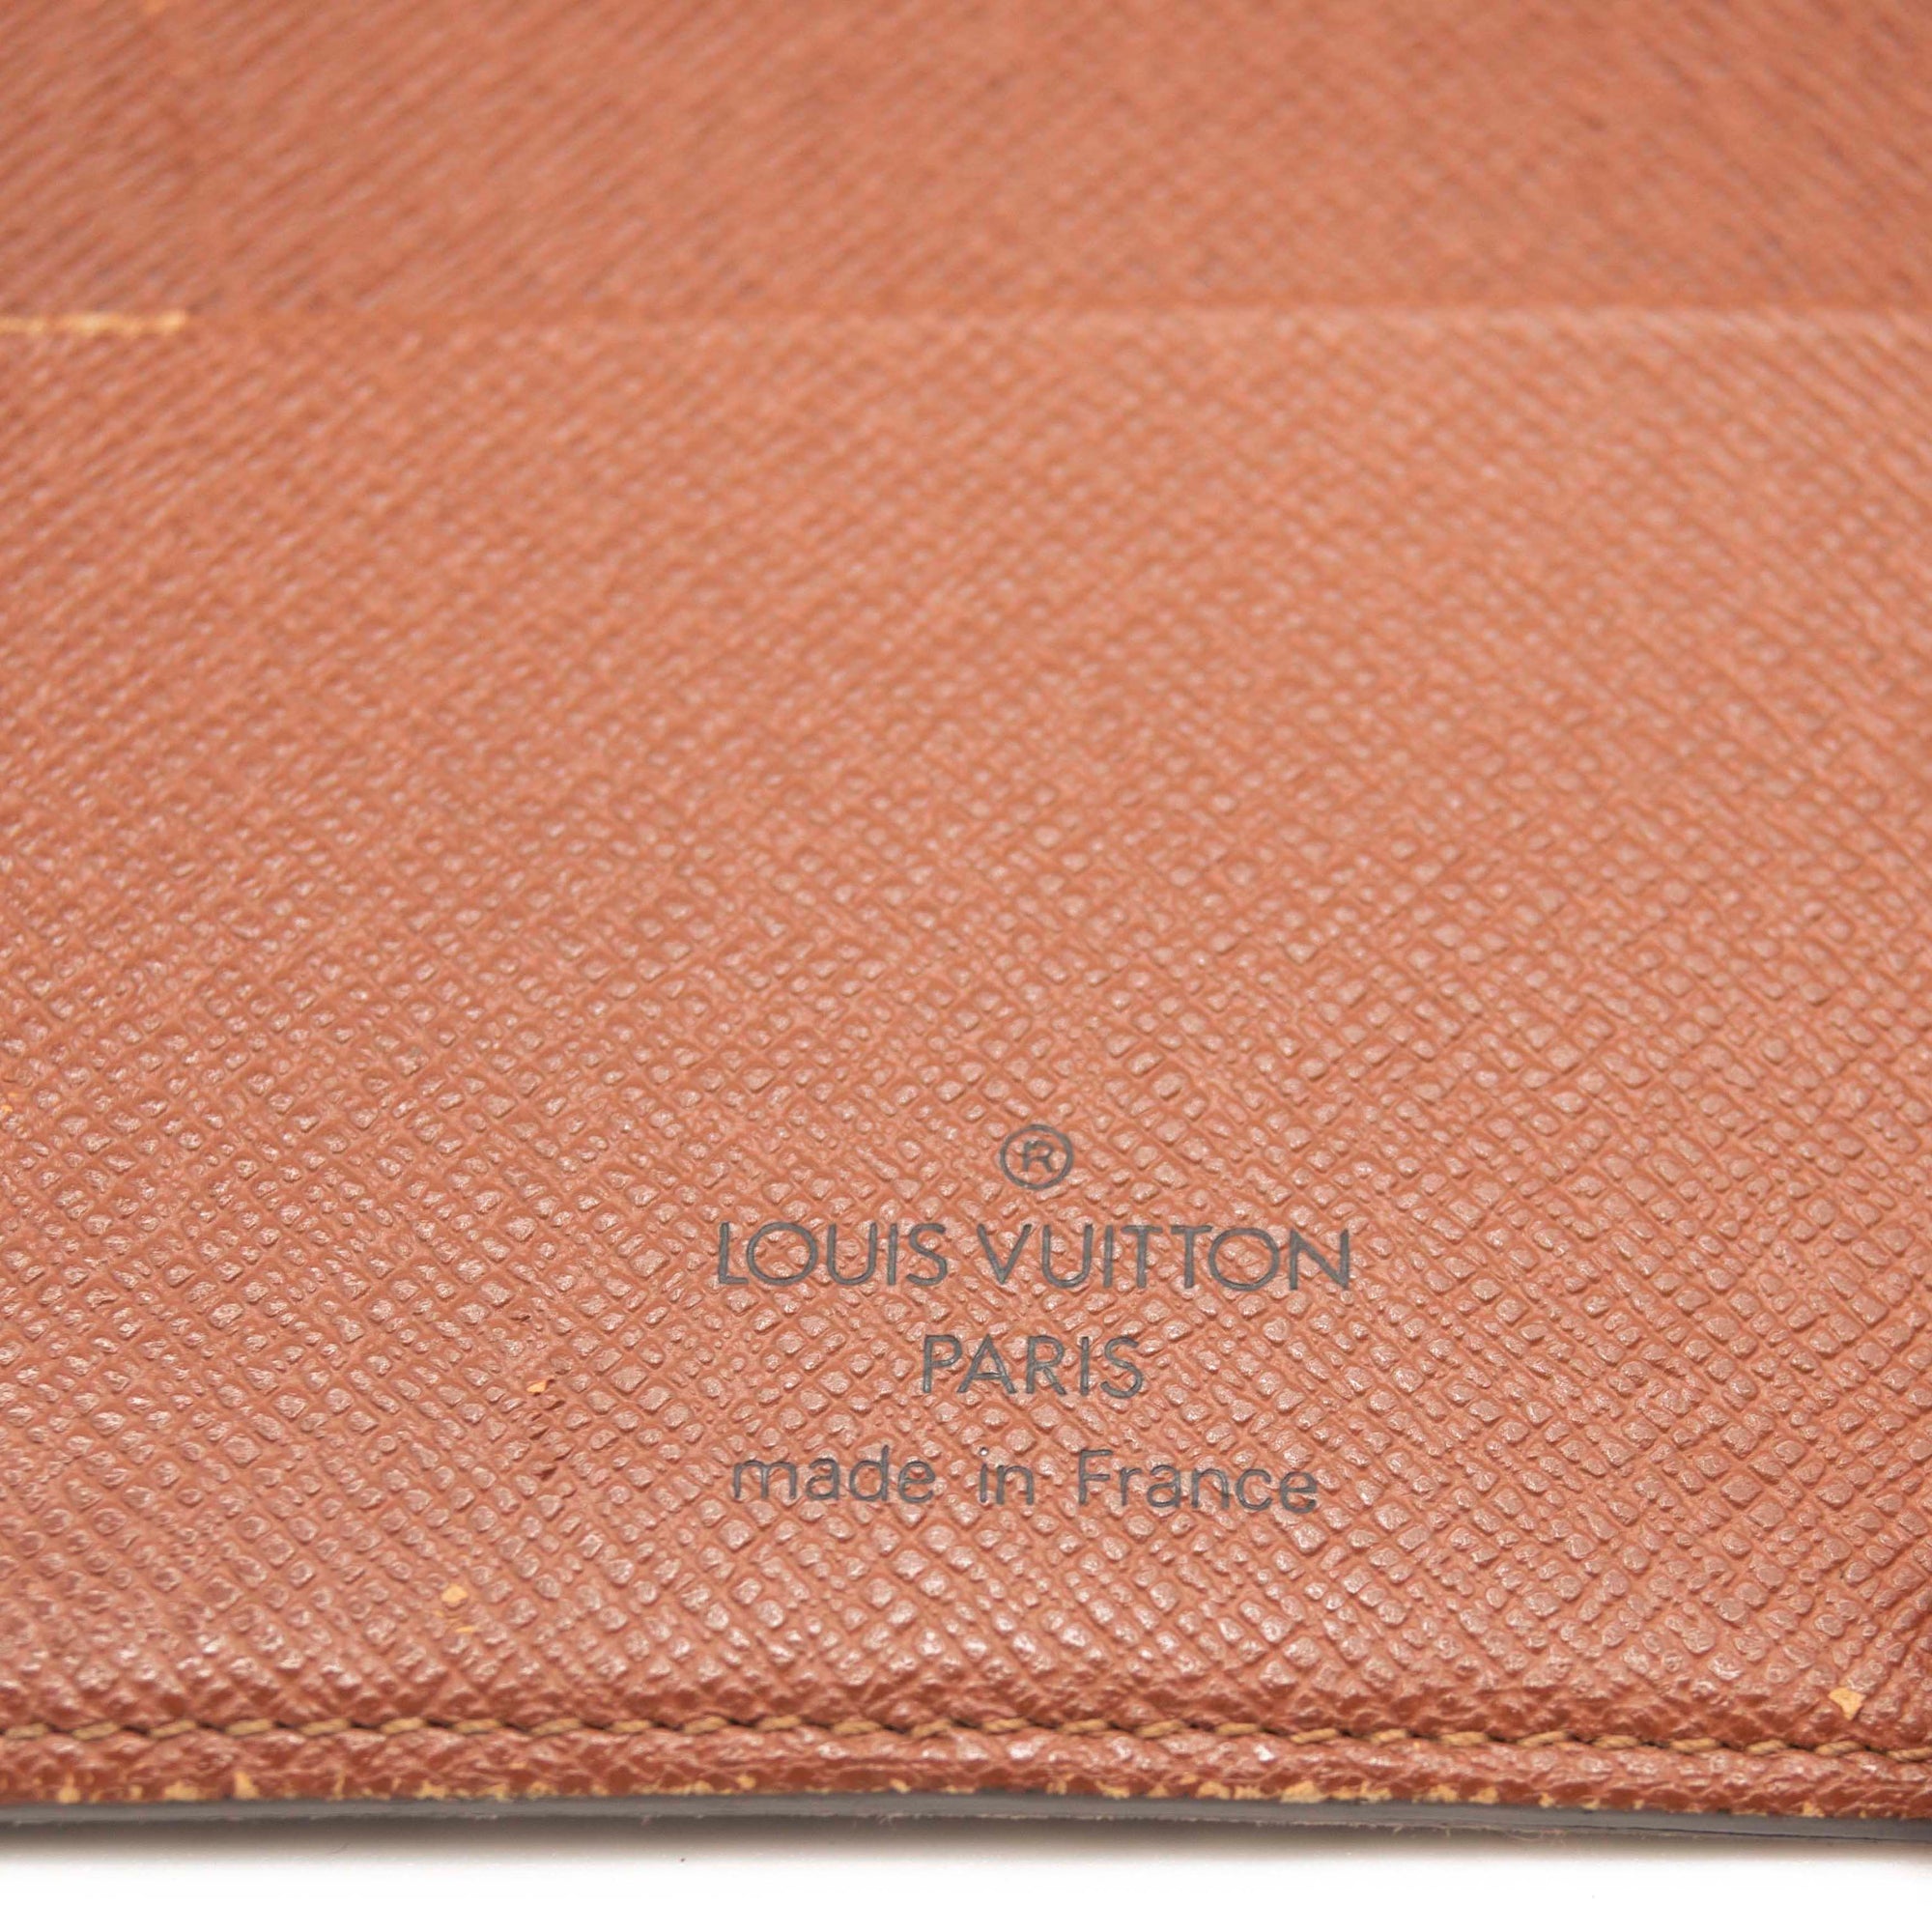 Louis Vuitton Large Ring Agenda Cover Vuittonite Monogram